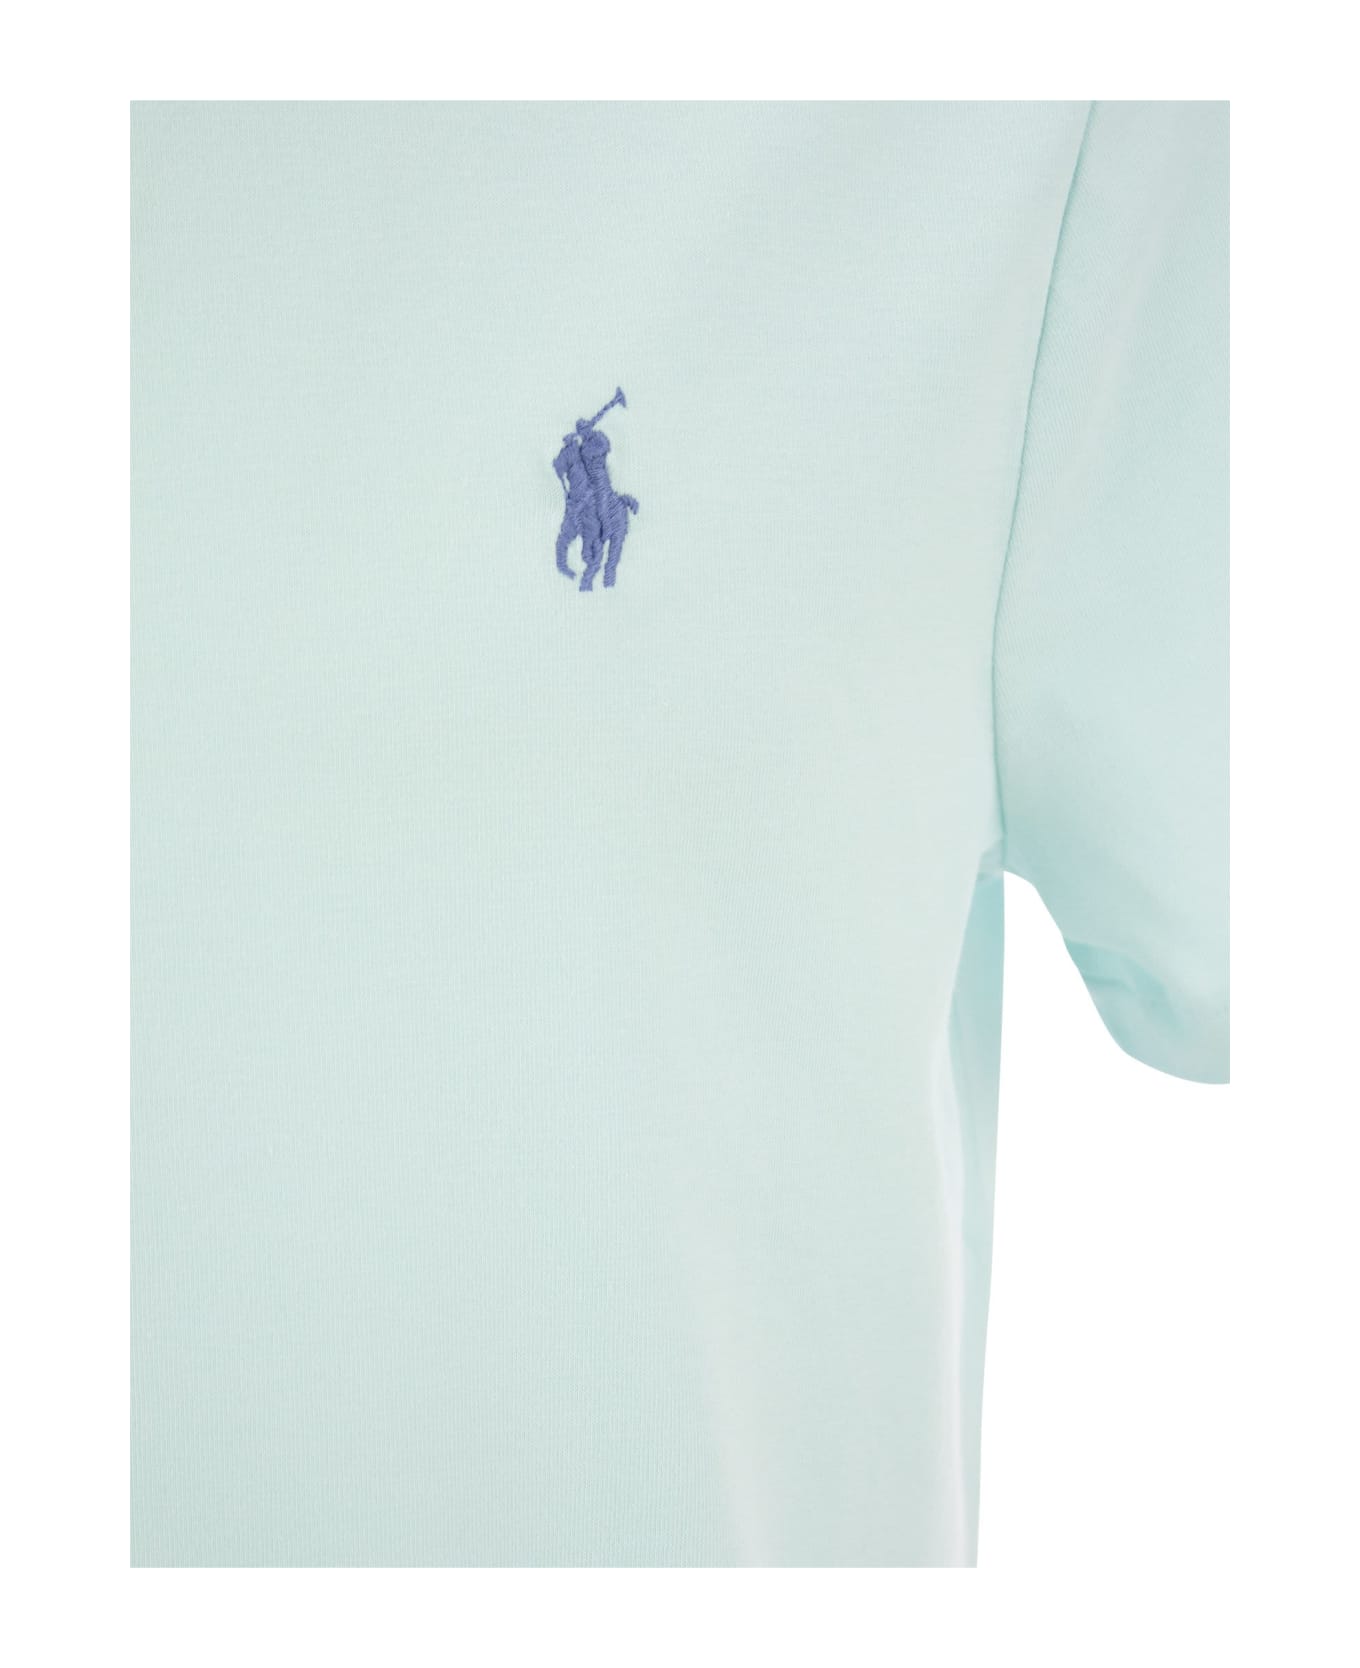 Polo Ralph Lauren Round Neck T-shirt - Light Blue シャツ